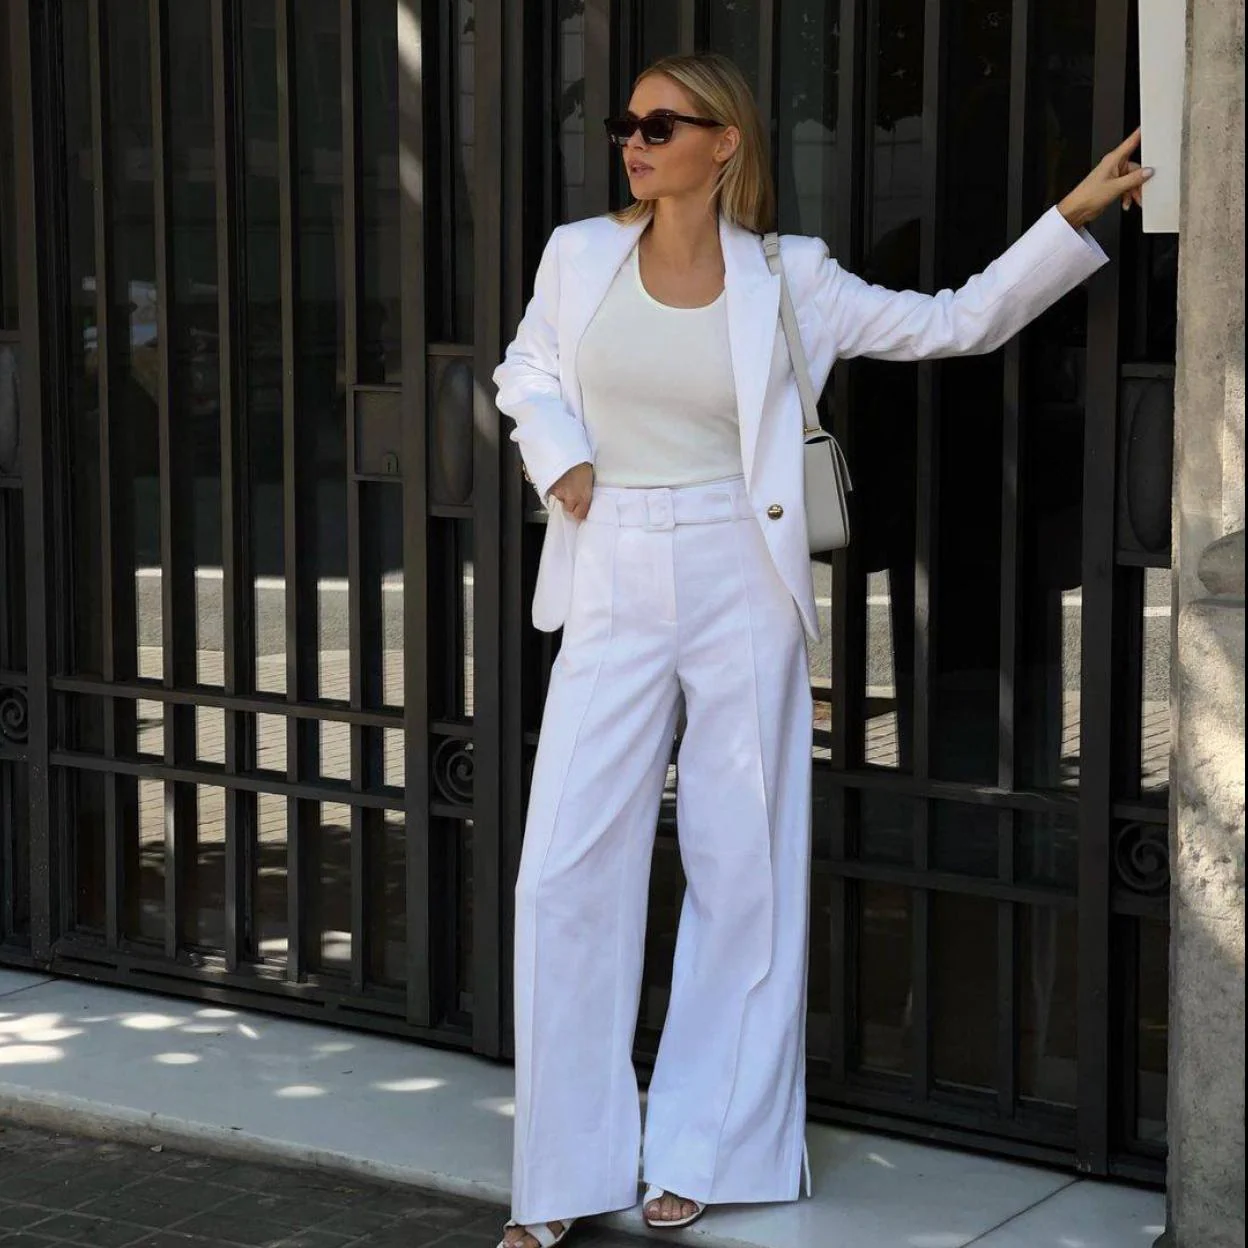 MODA: El traje blanco es la tendencia con efecto rejuvenecedor que las mejor vestidas llevarán esta primavera | Mujer